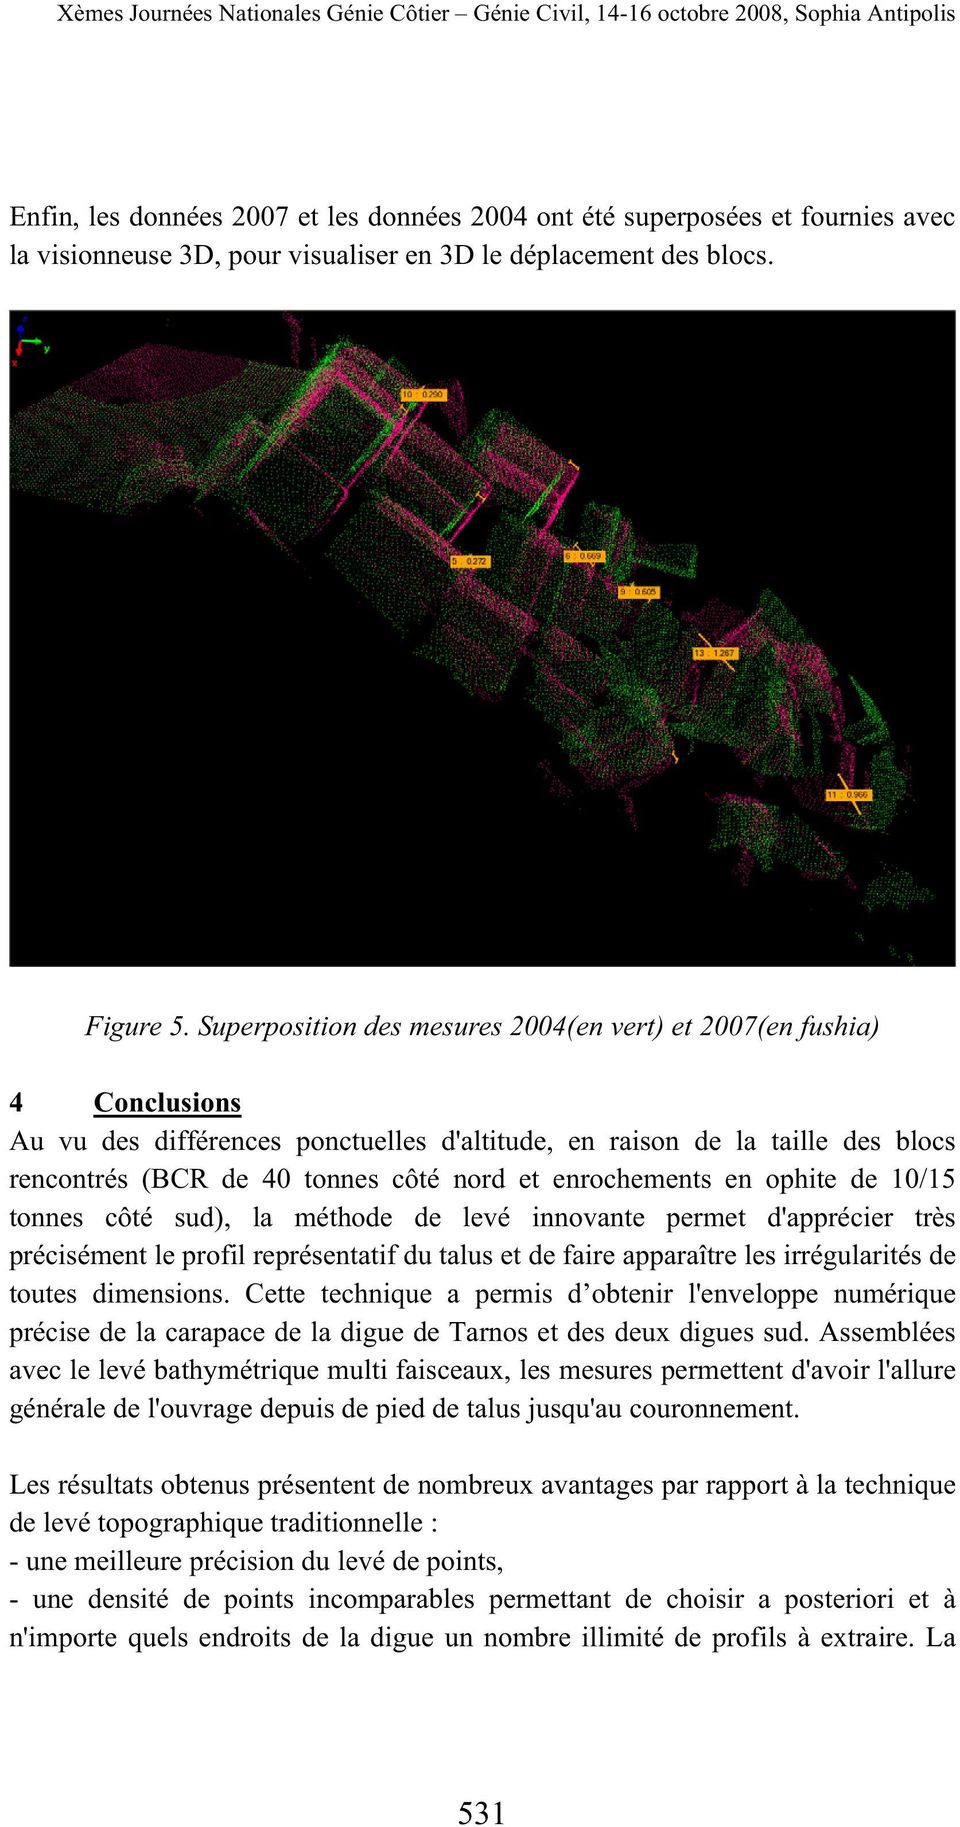 Superposition des mesures 2004(en vert) et 2007(en fushia) 4 Conclusions Au vu des différences ponctuelles d'altitude, en raison de la taille des blocs rencontrés (BCR de 40 tonnes côté nord et